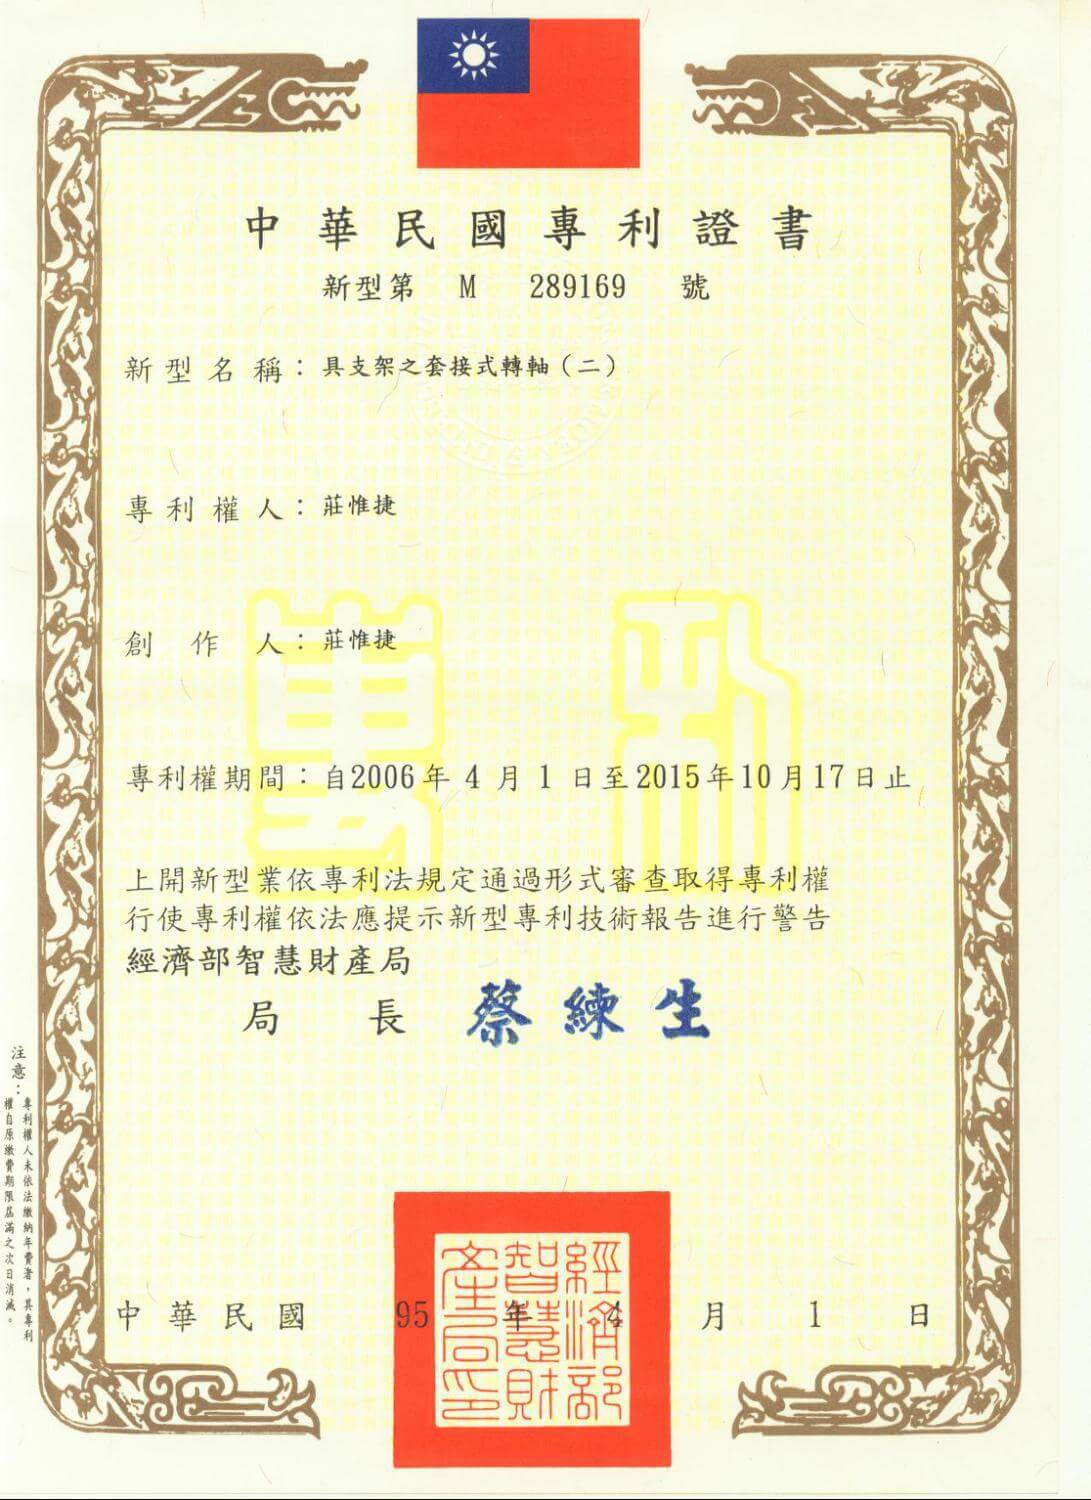 Chienfu-Tec CNC patents in Taiwan-17